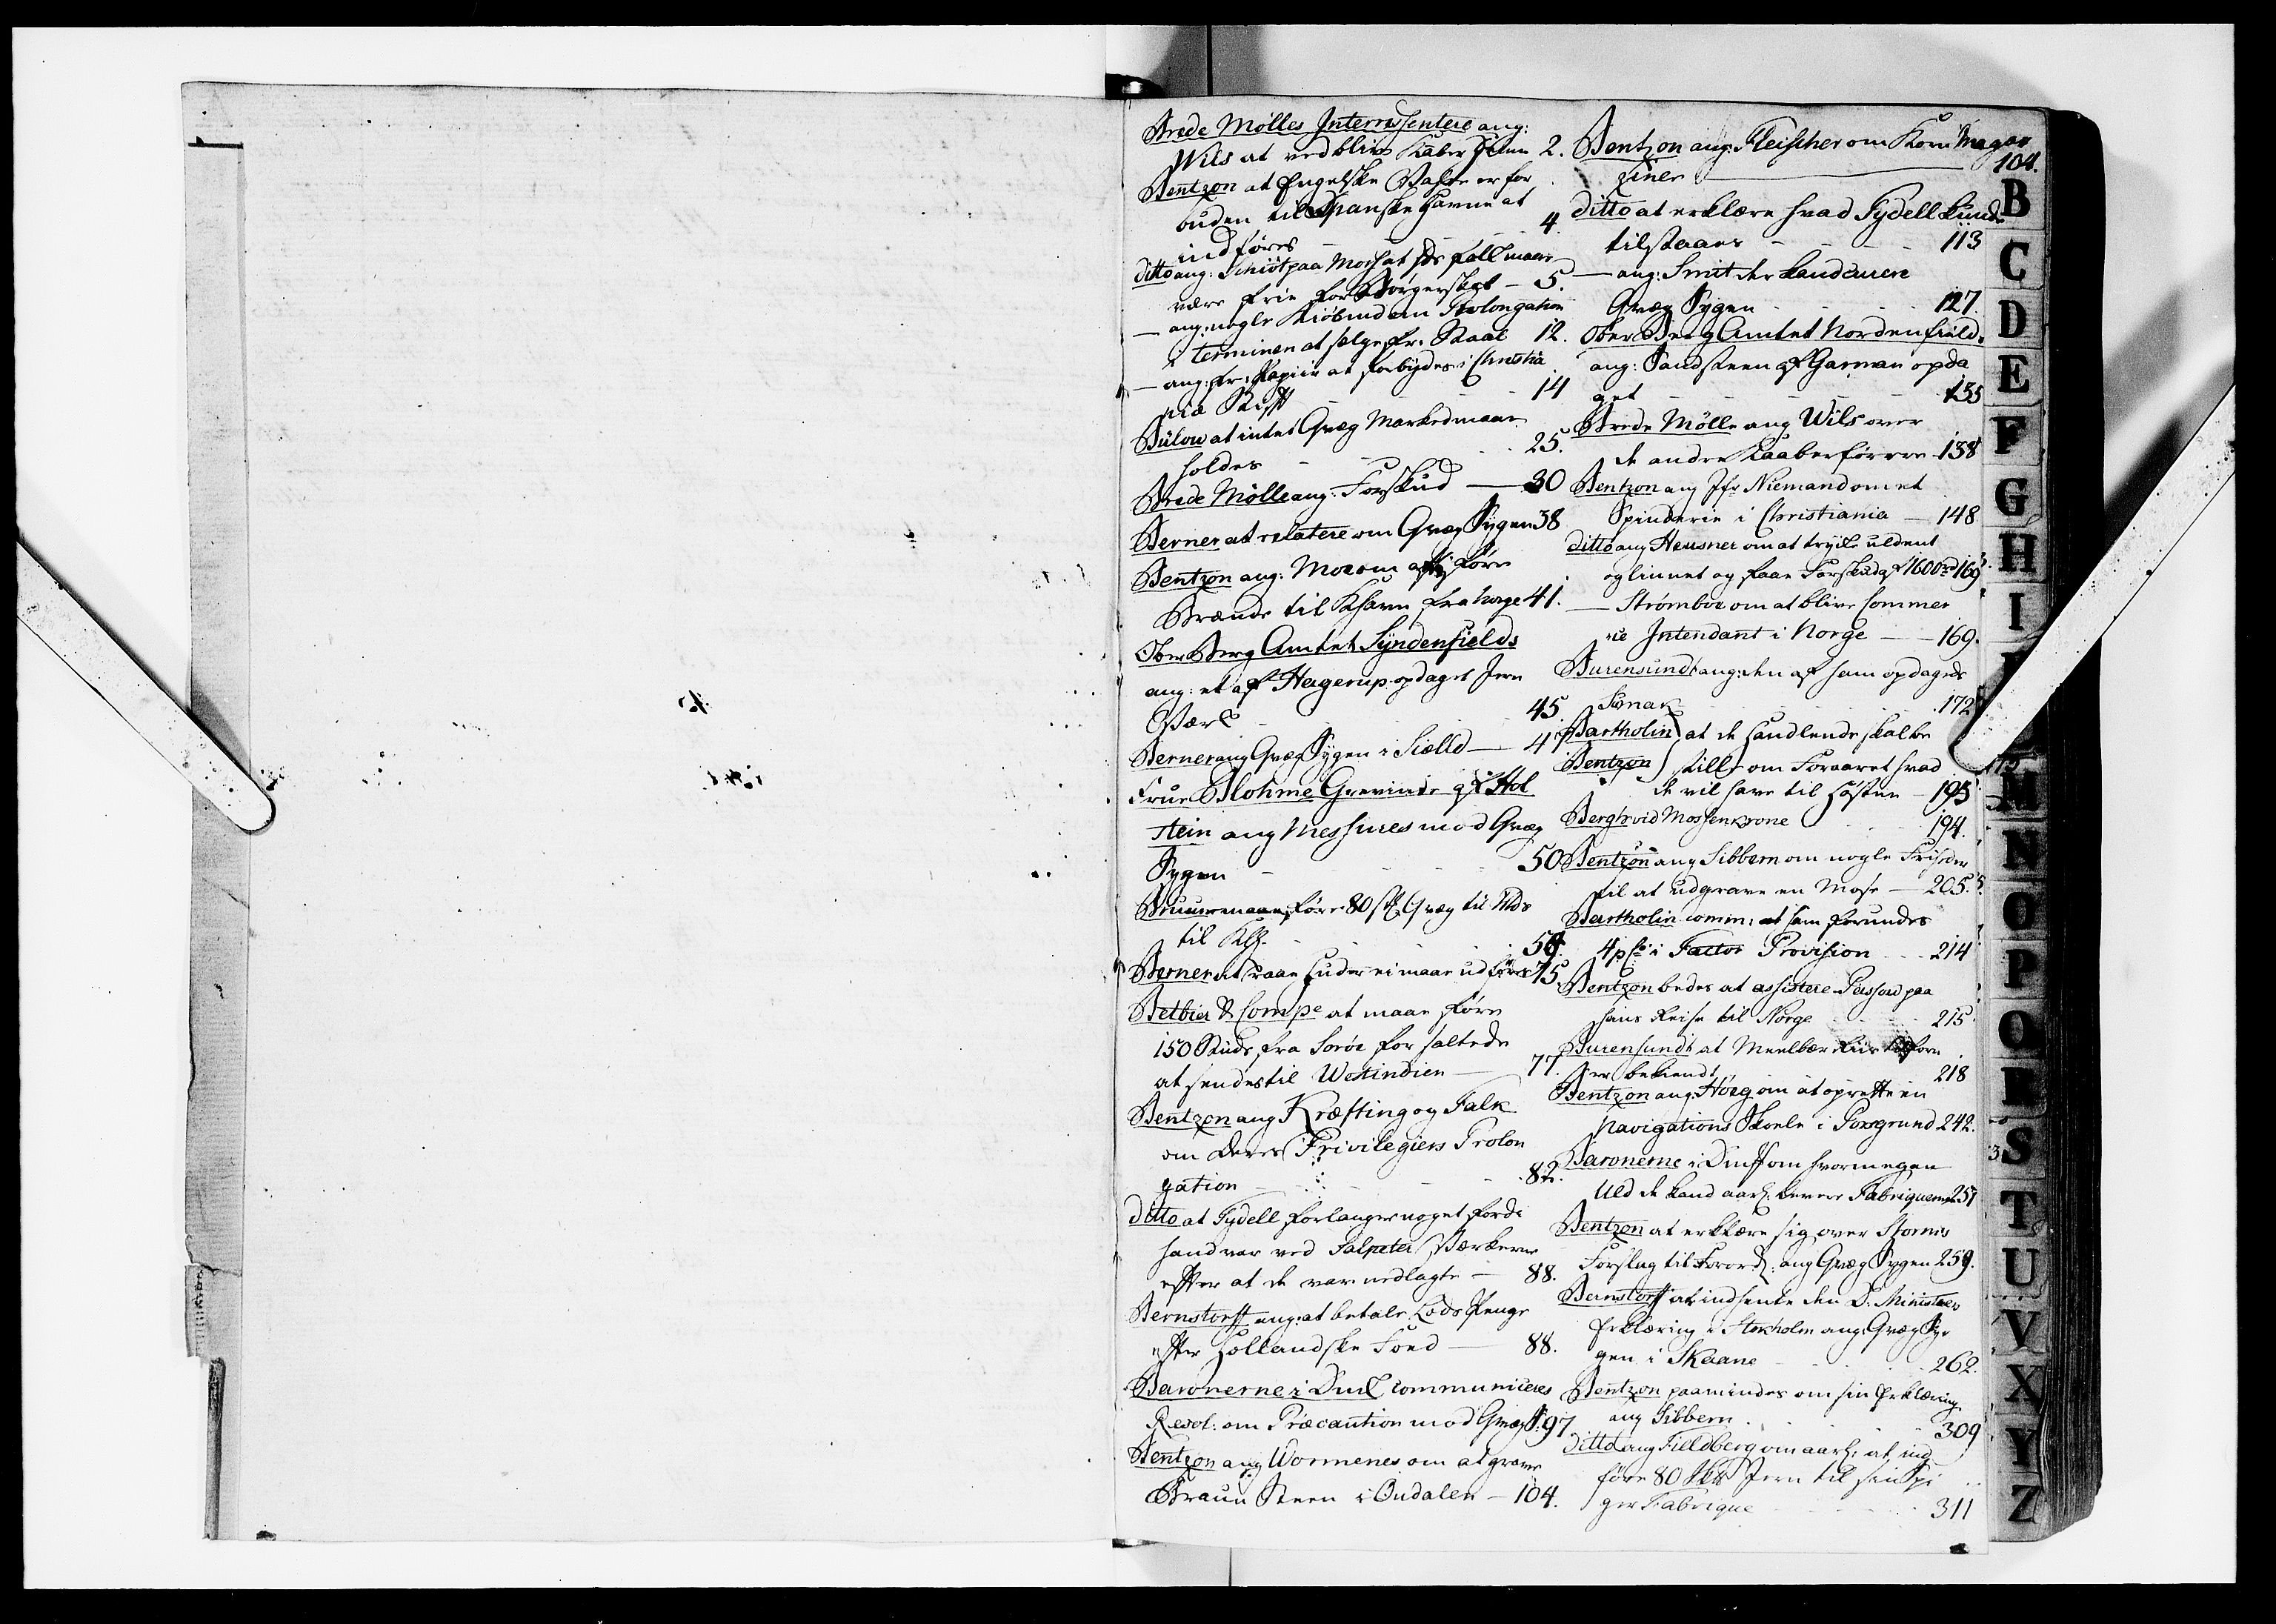 Kommercekollegiet, Dansk-Norske Sekretariat, DRA/A-0001/10/46: Dansk-Norsk kopibog, 1762-1765